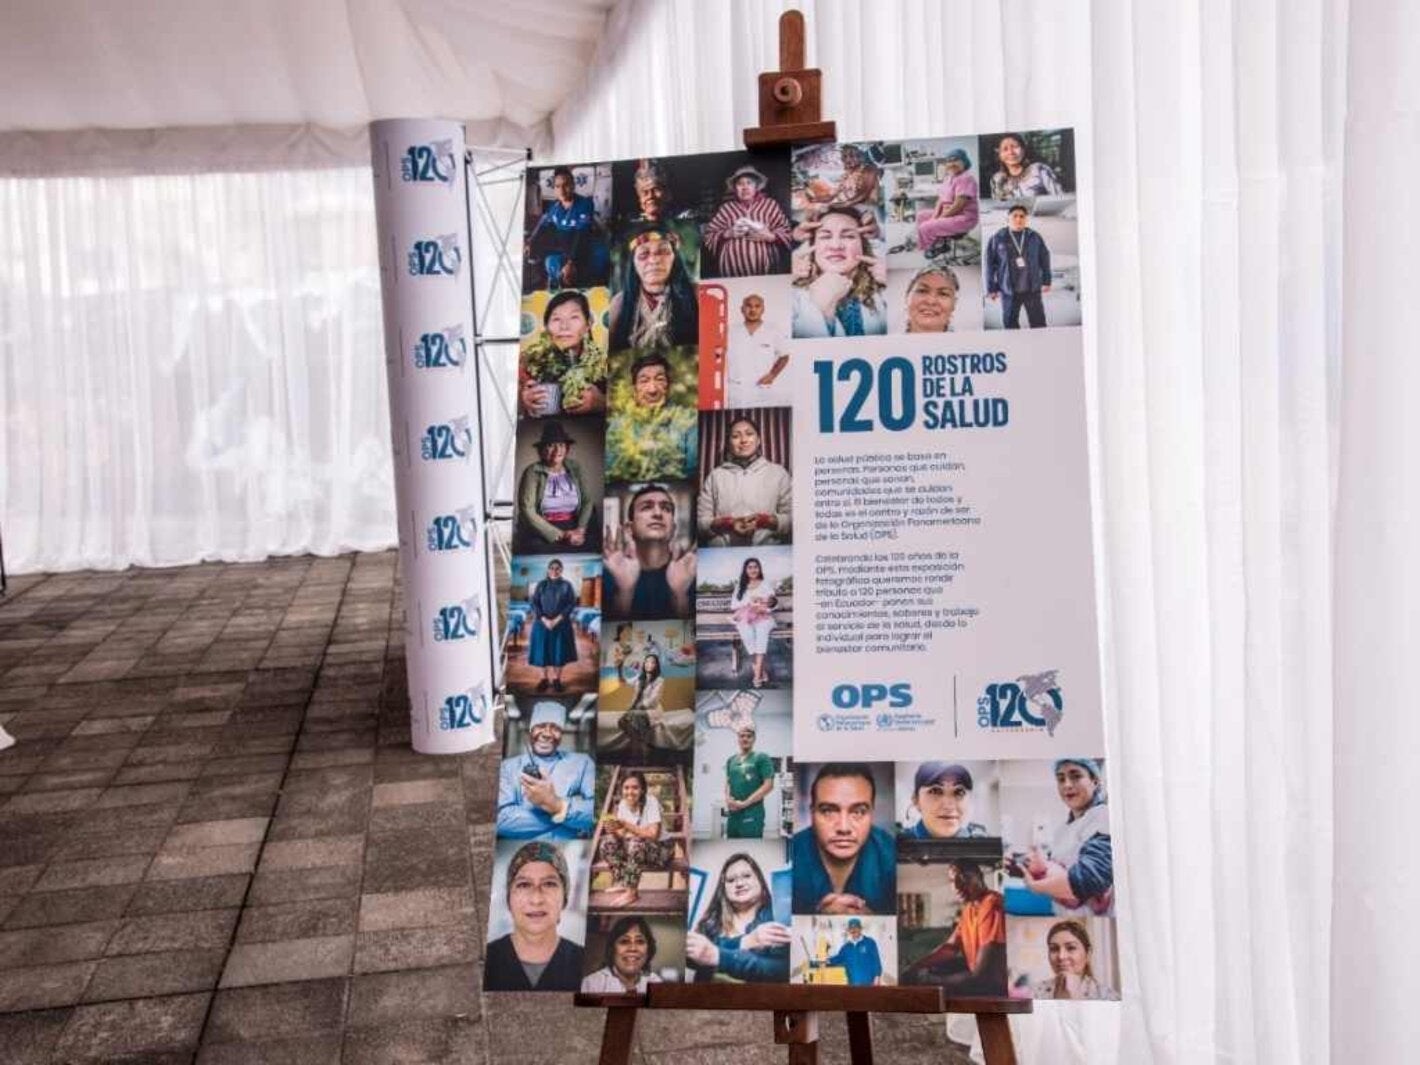 OPS presenta en Ecuador 120 ROSTROS DE LA SALUD, una exposición fotográfica que rinde tributo a personas que contribuyen con el bienestar y la salud pública